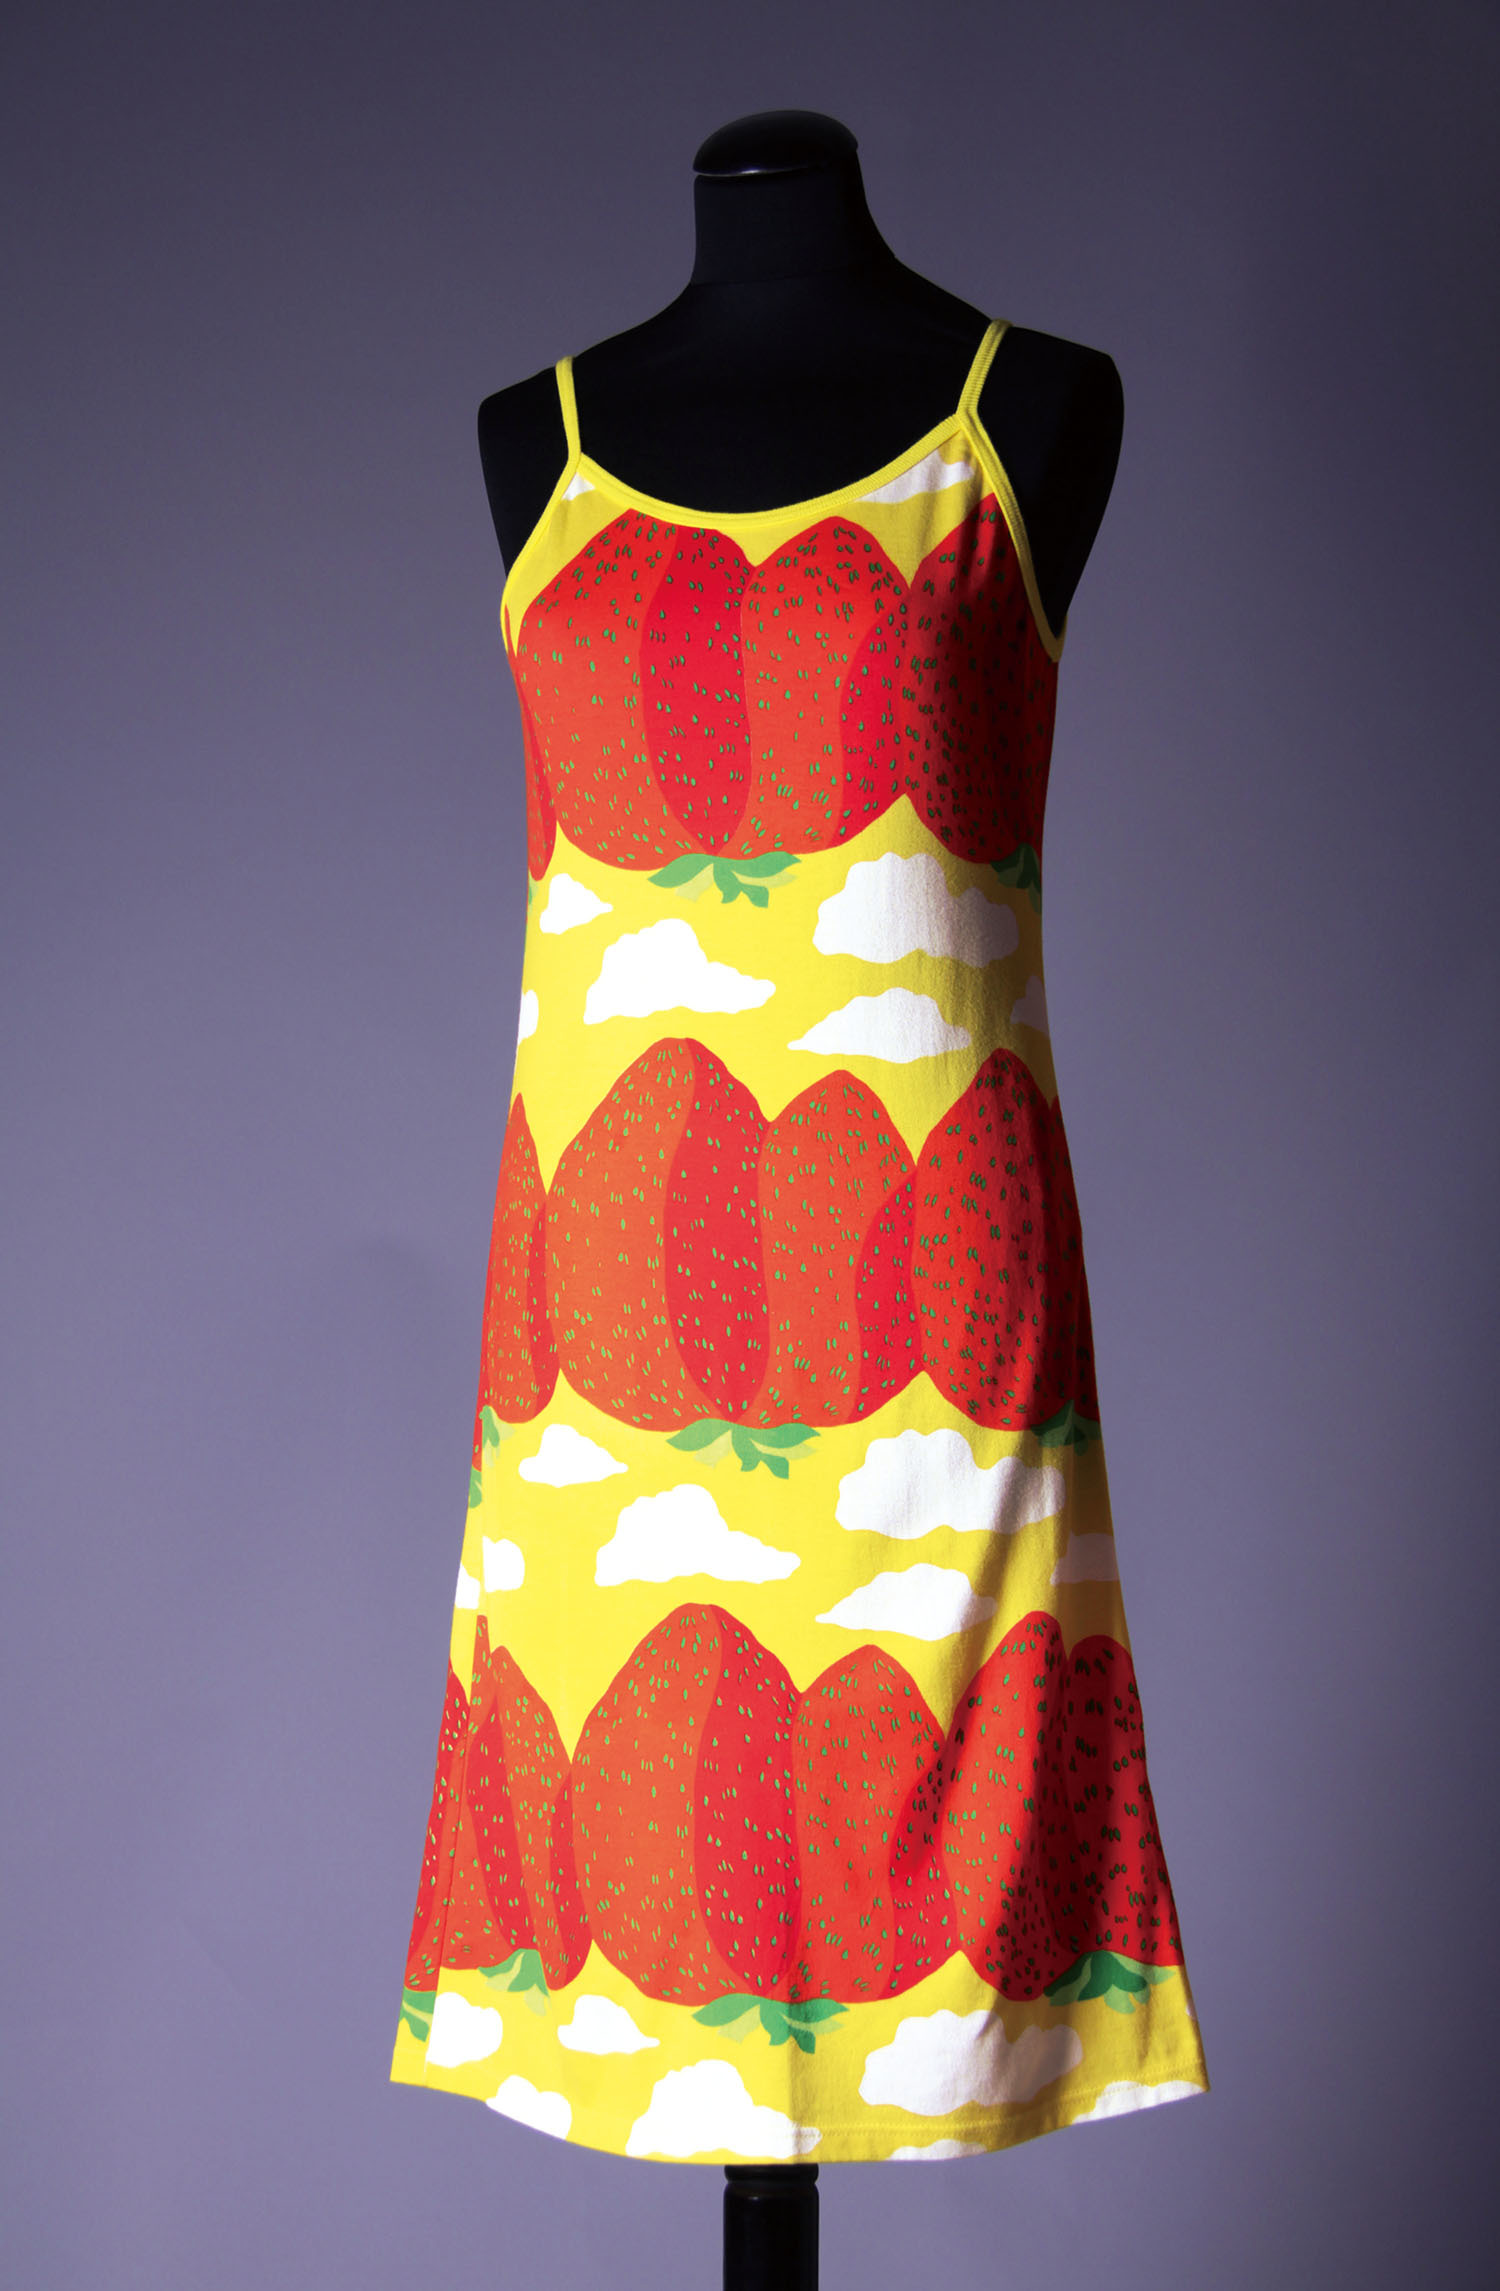 ドレス、服飾デザイン：ミカ・ピーライネン、2001年　 ファブリック≪マンシッカヴオレト≫（イチゴの山々）、図案デザイン：マイヤ・イソラ、 1969年　Design Museum / Harry Kivilinna